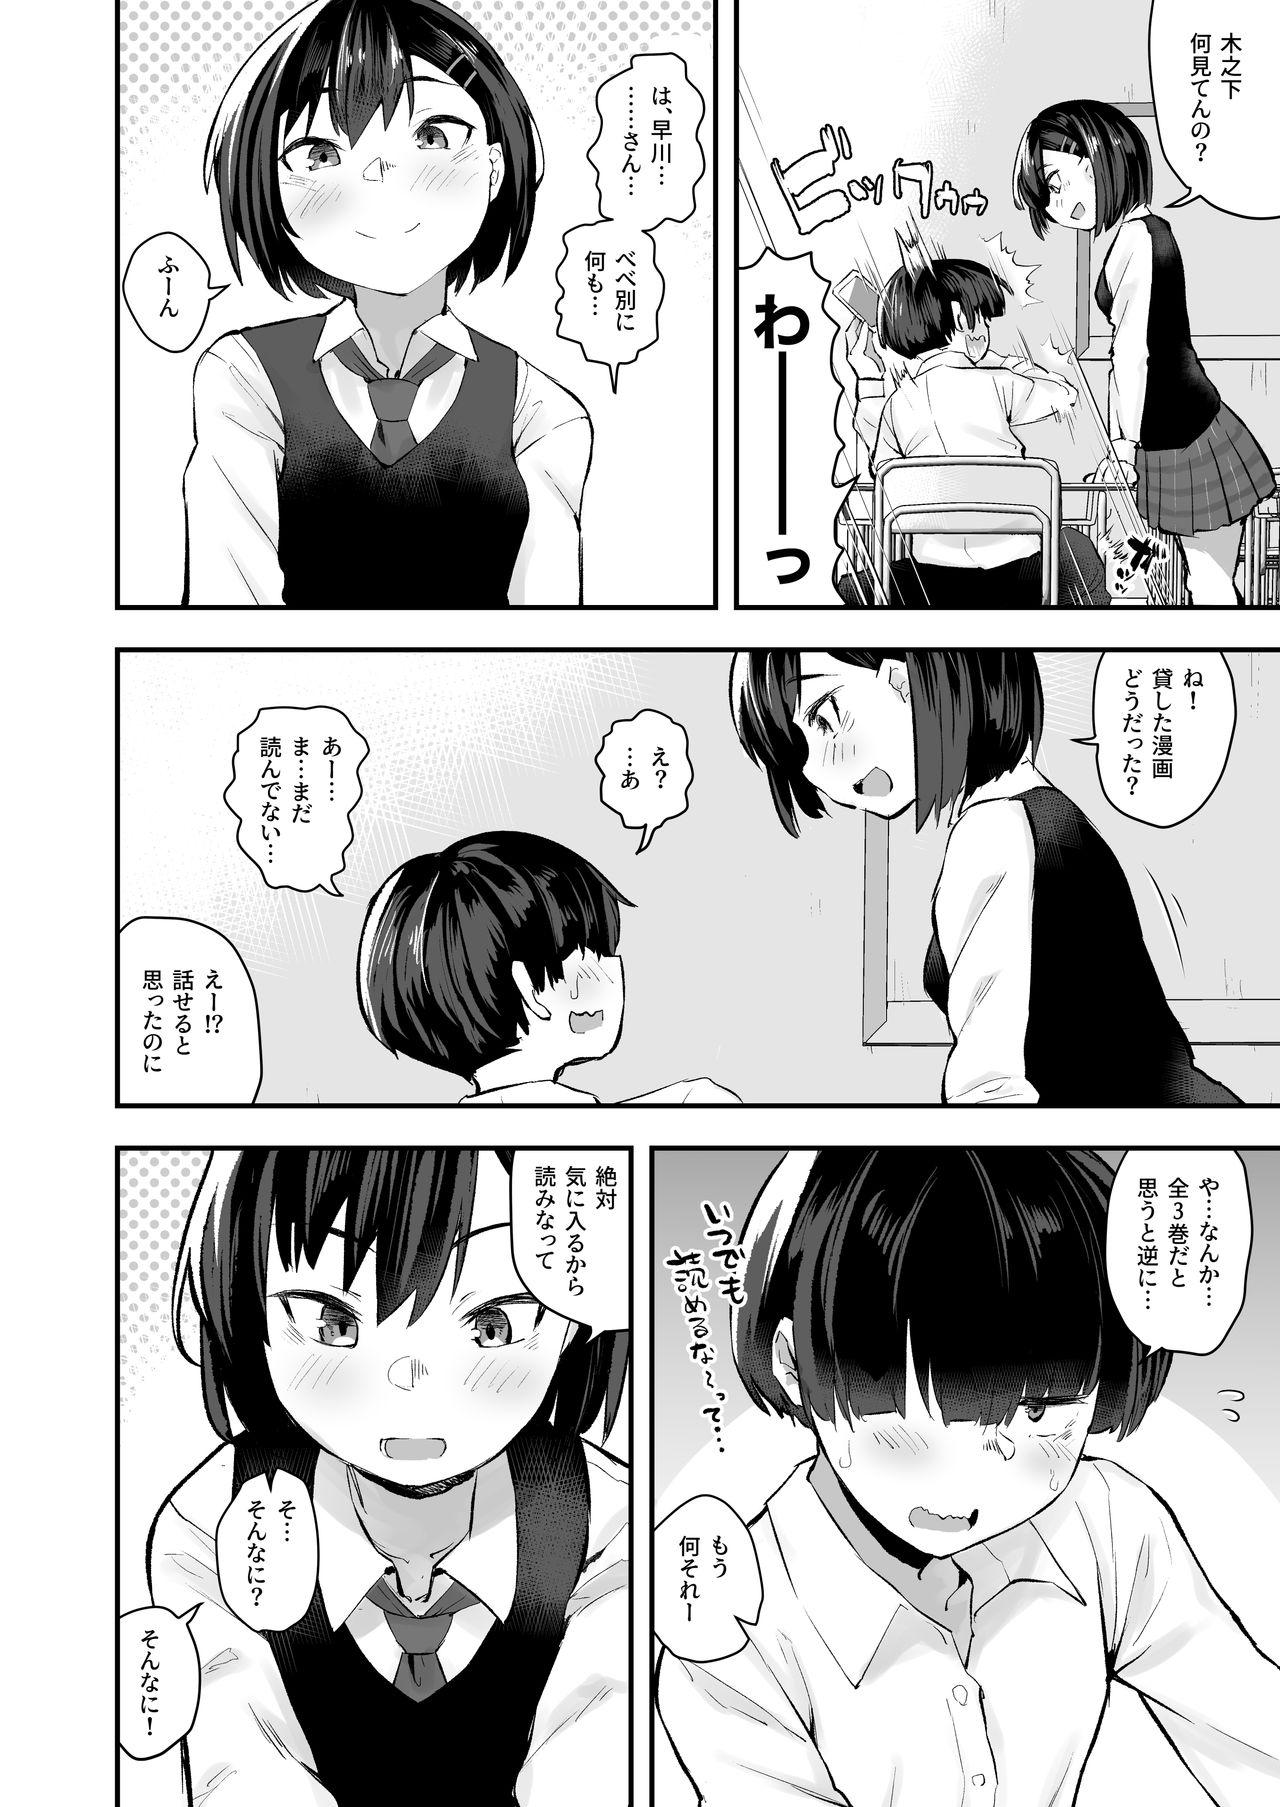 Abg Classmate ga Uraaka de Mainichi Ochinpo Asari Shiterukamoshirenai - Original Screaming - Page 3